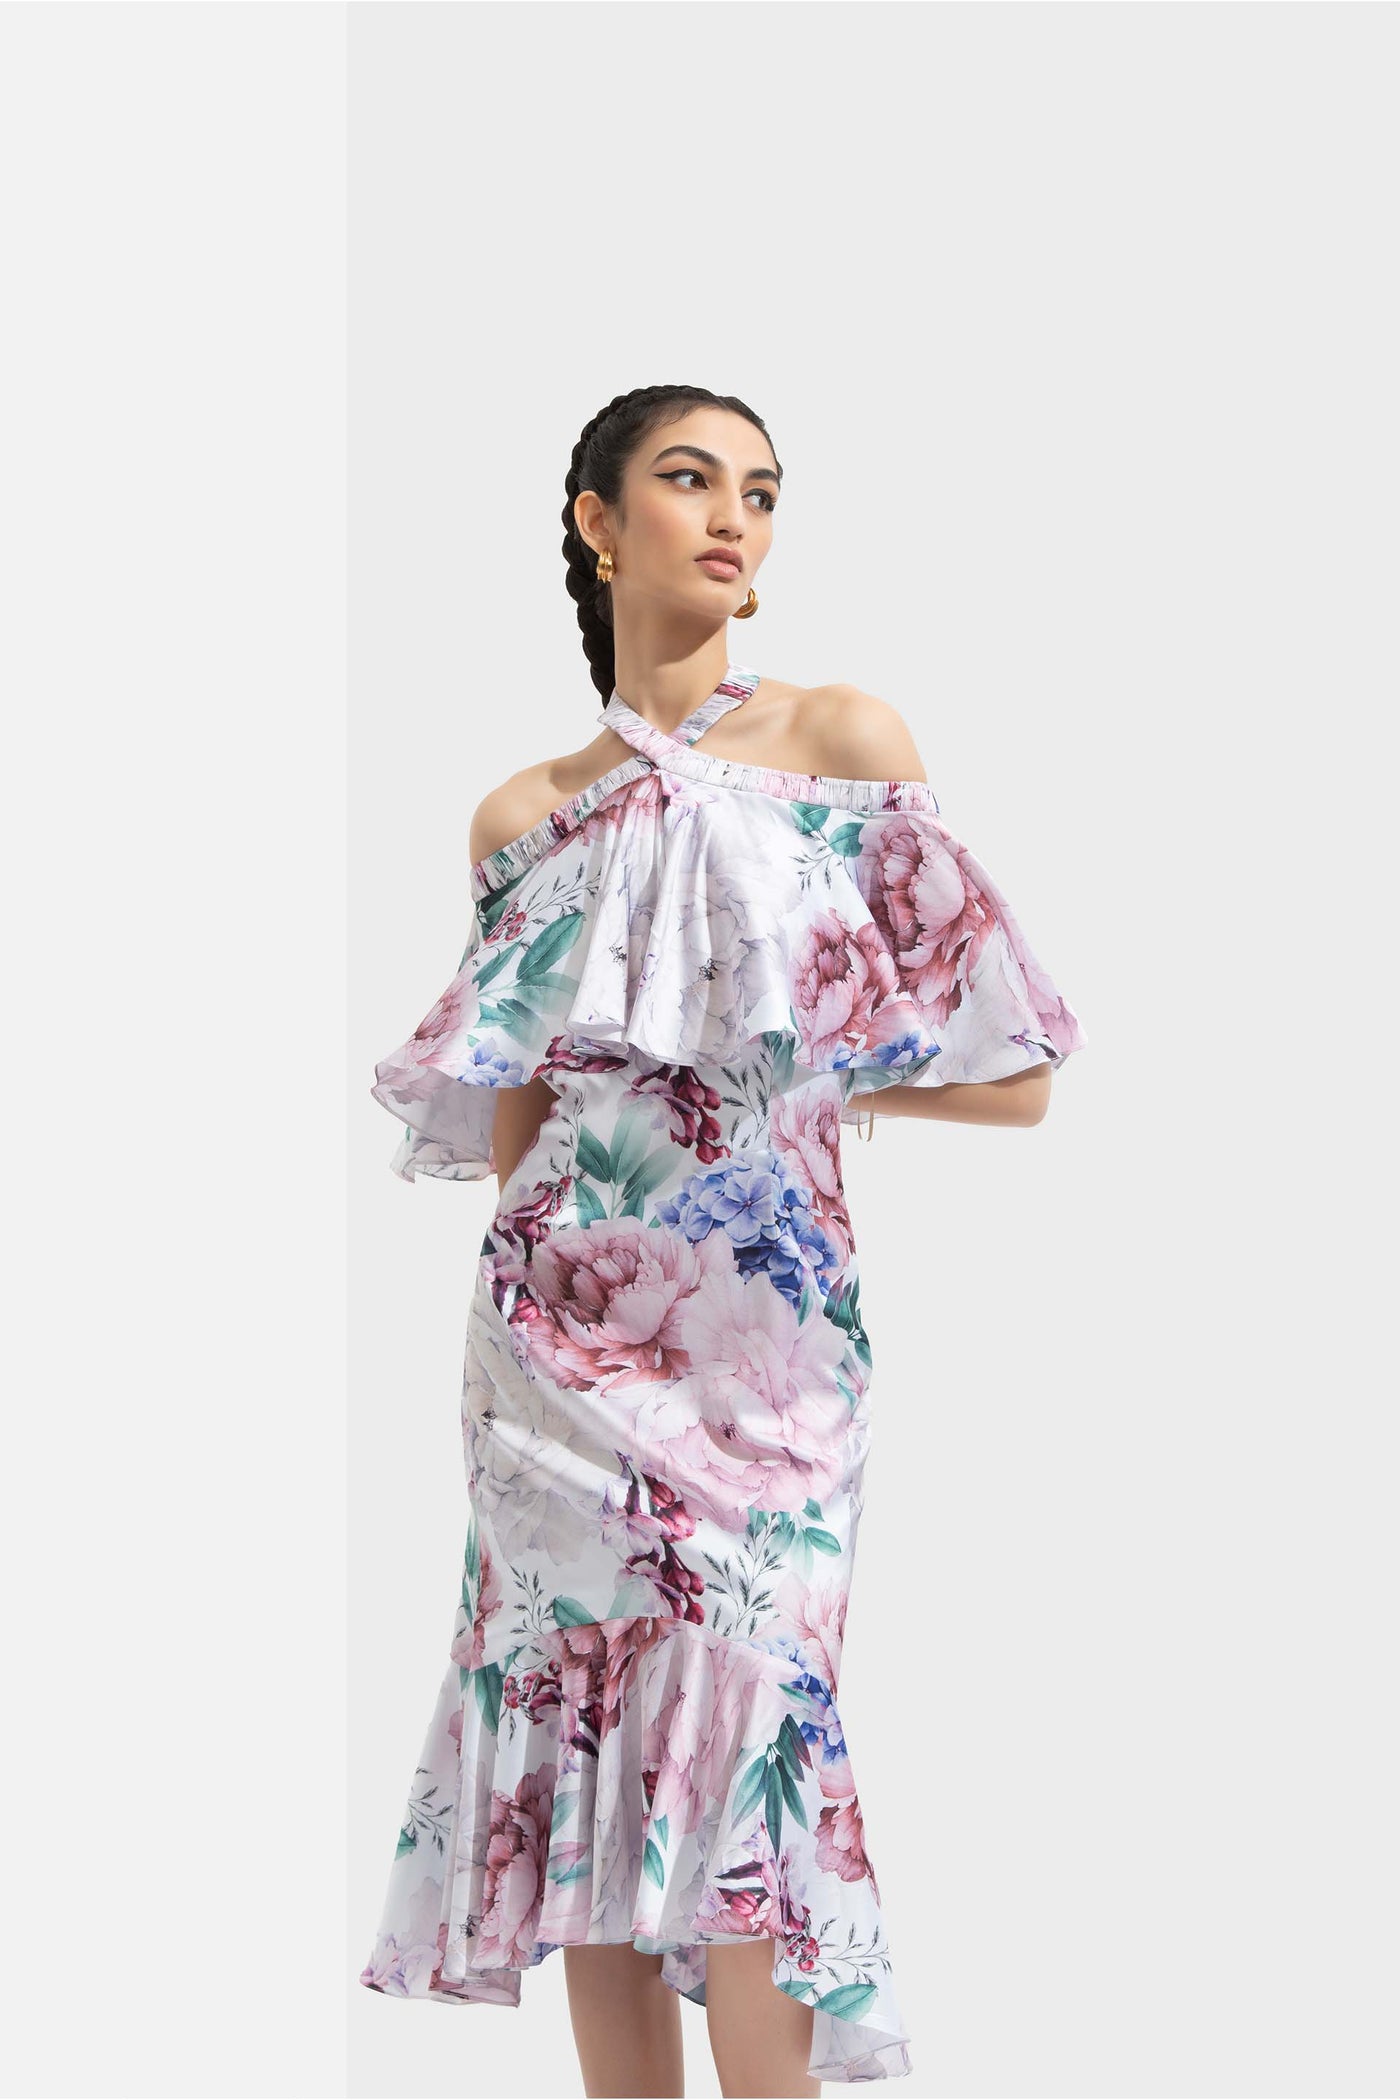 Mandira Wirk Iris printed satin off shoulder dress with halter neckline white western indian designer wear online shopping melange singapore